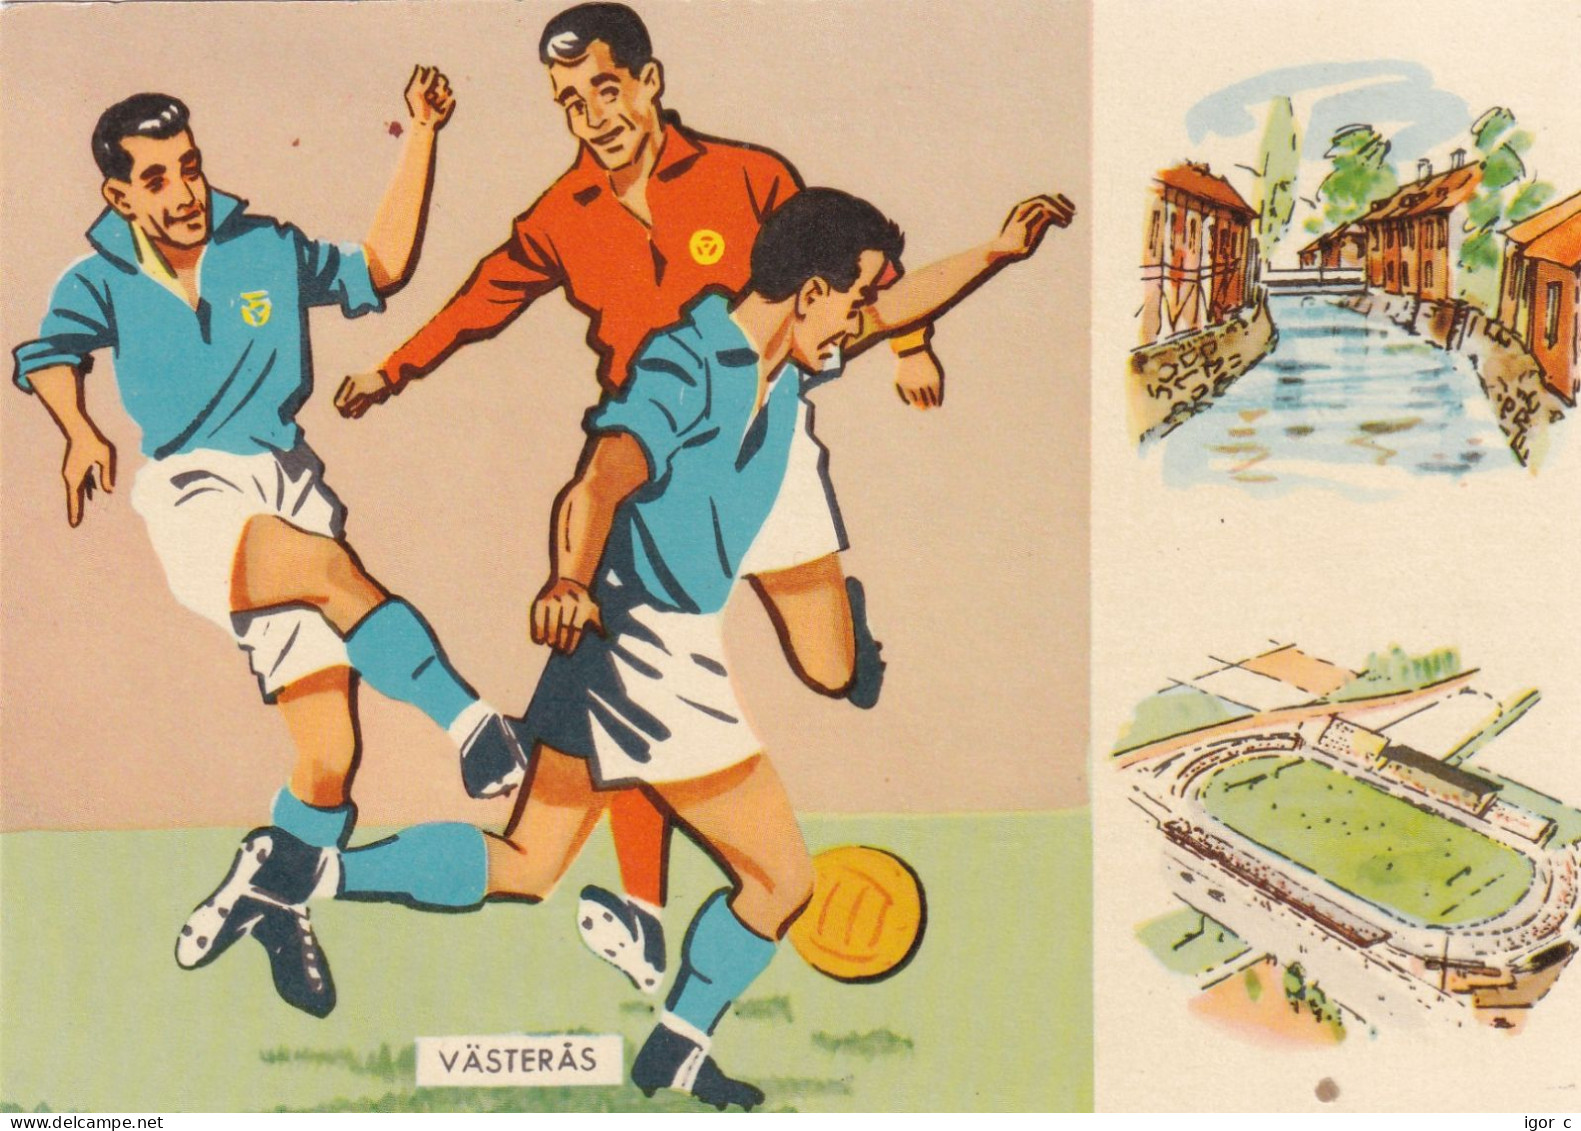 Sweden 1958 Card: Football Fussball Soccer Calcio; FIFA WC 1958 Sweden; France - Yugoslavia Match - 1958 – Svezia